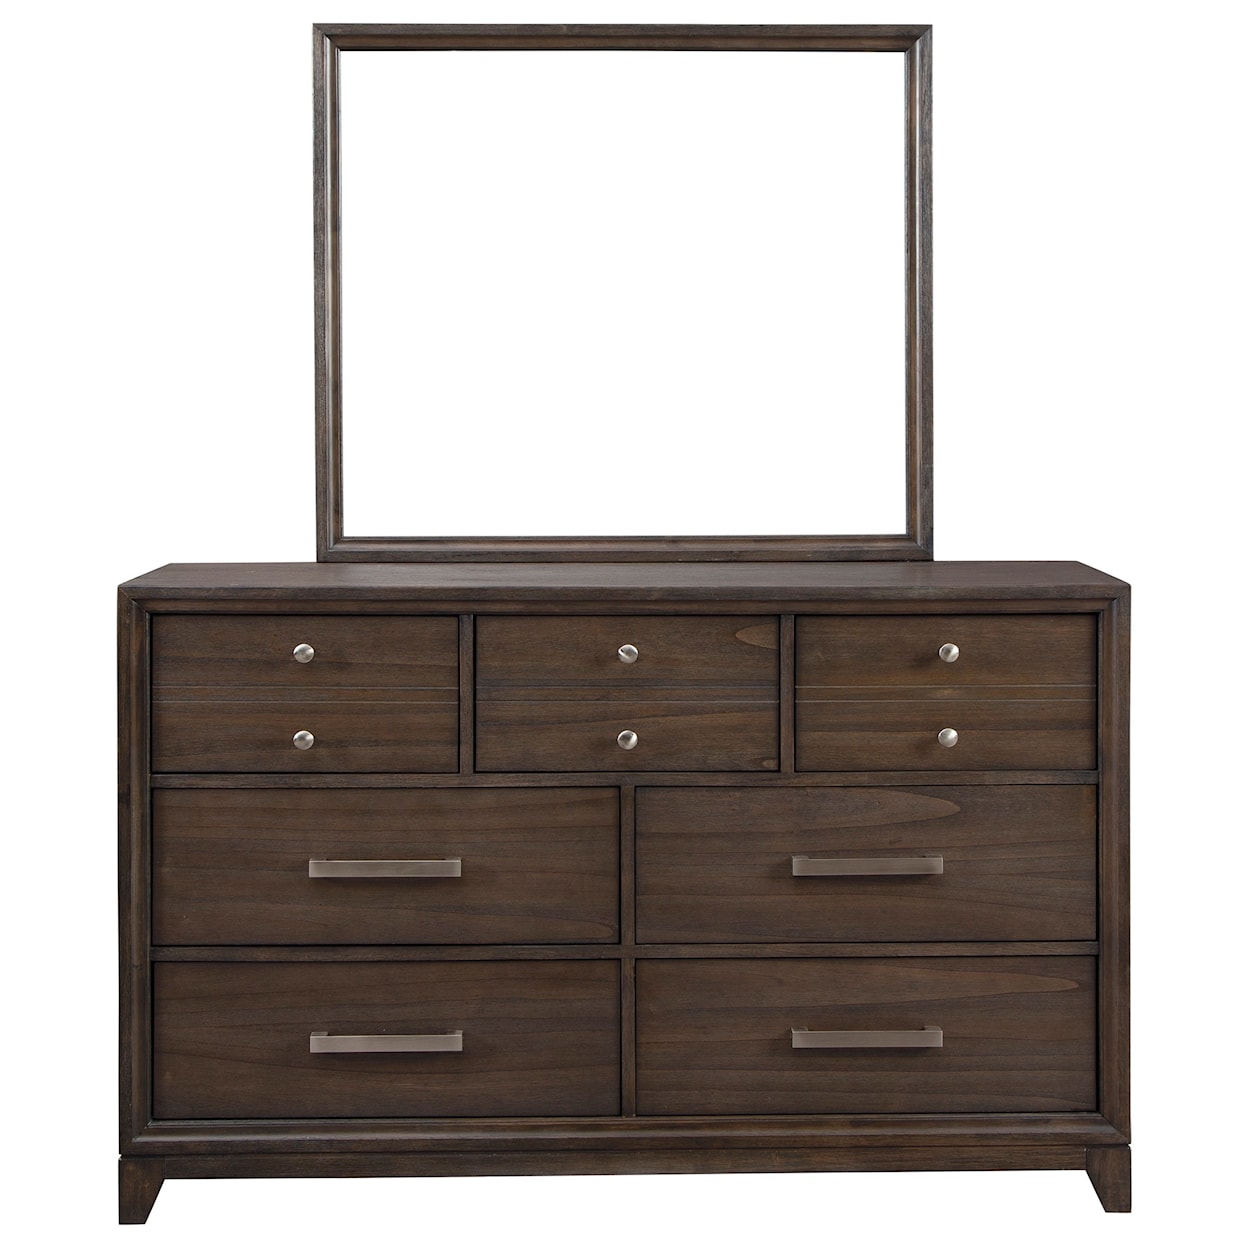 StyleLine Brueban Dresser and Mirror Set